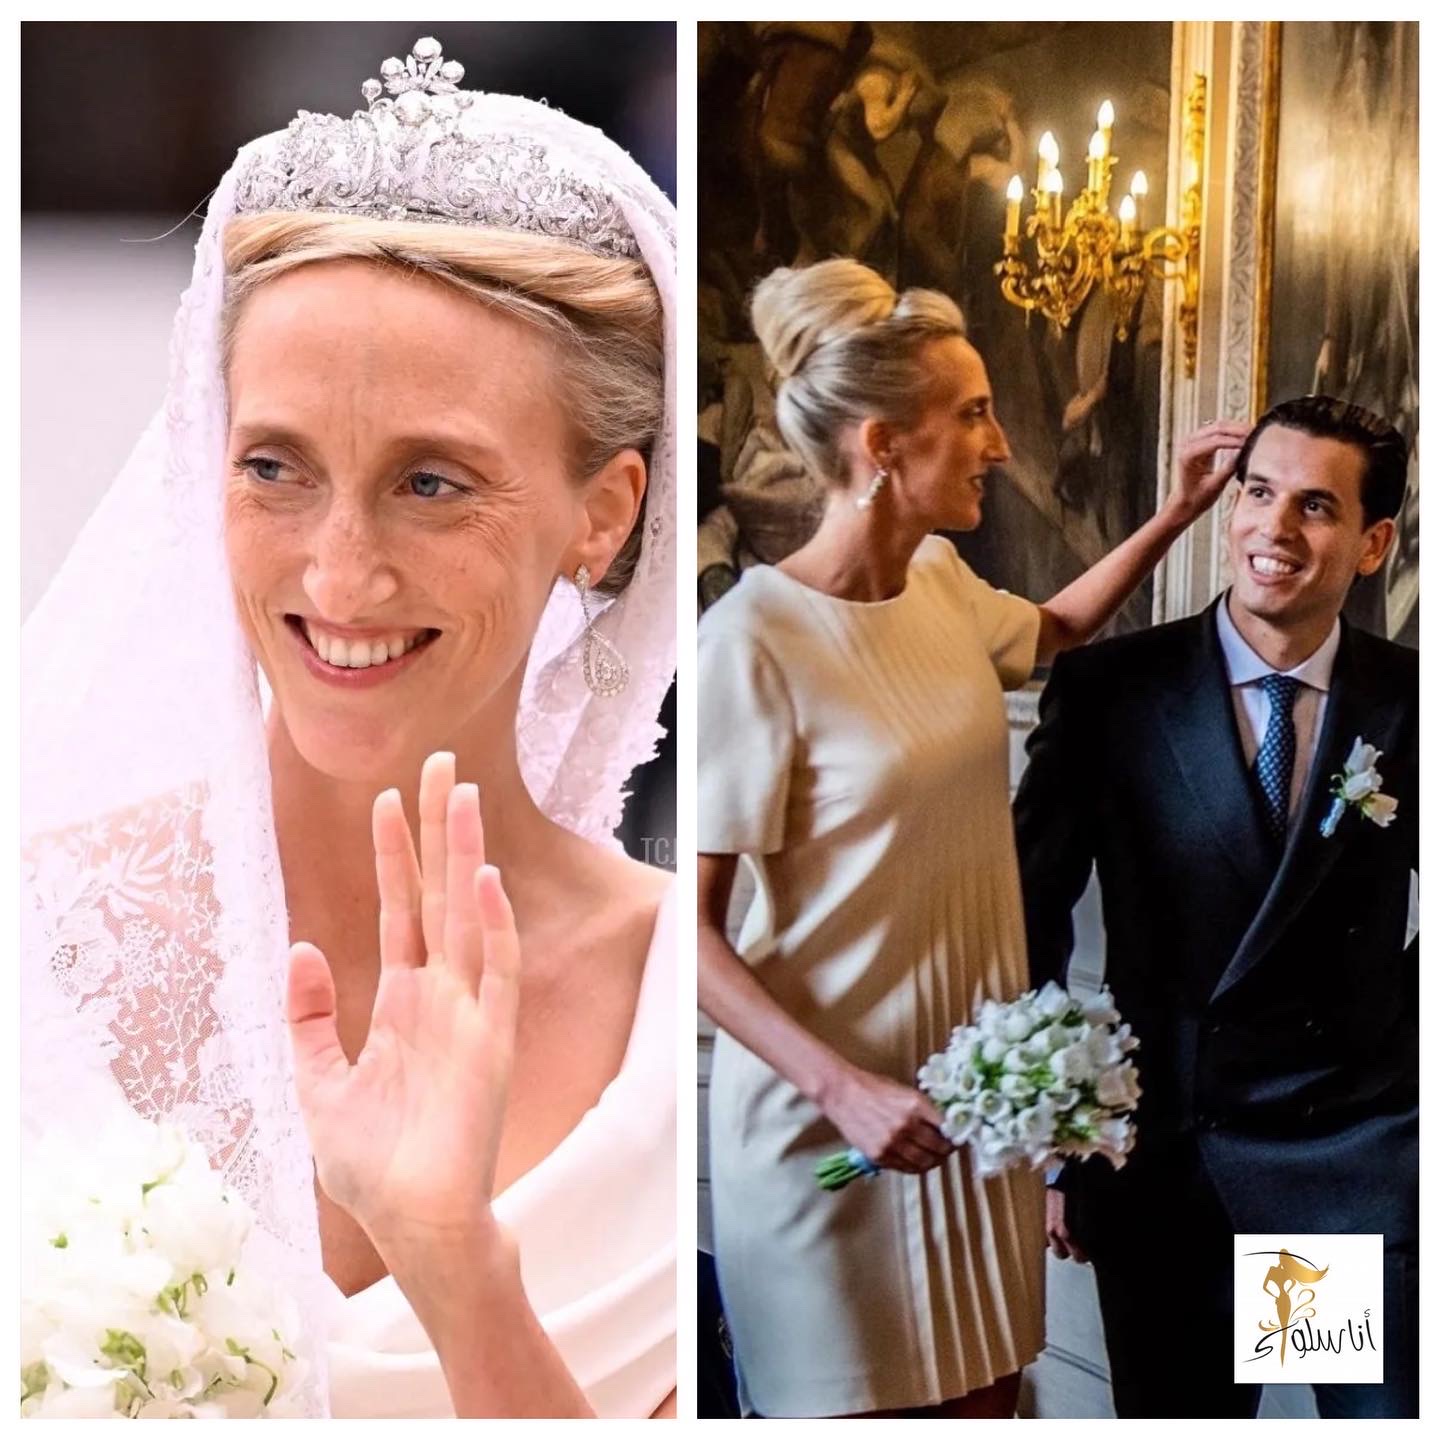 Prinsesse Maria Laura af Belgiens bryllup med sin marokkanske forlovede, William Asfi